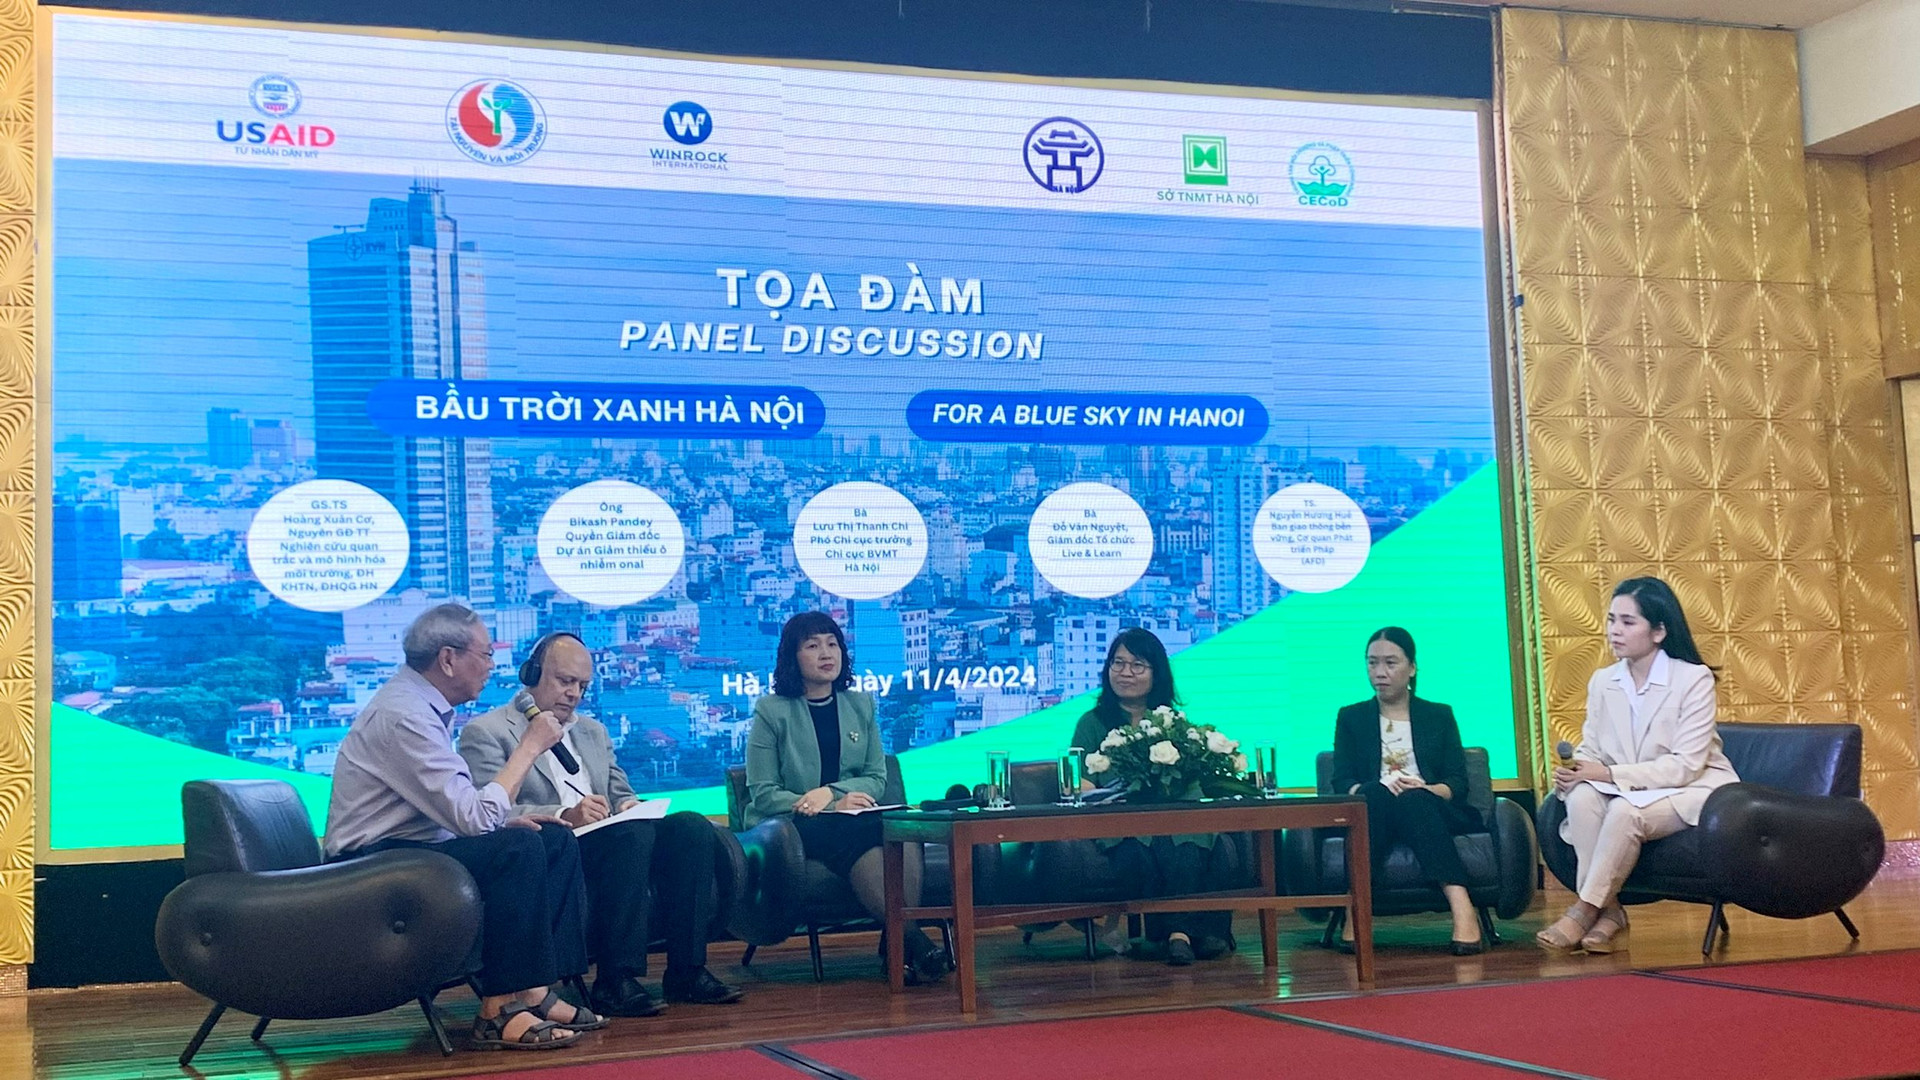 Các đại biểu thảo luận chung tay hợp tác cải thiện chất lượng không khí tại Hà Nội.